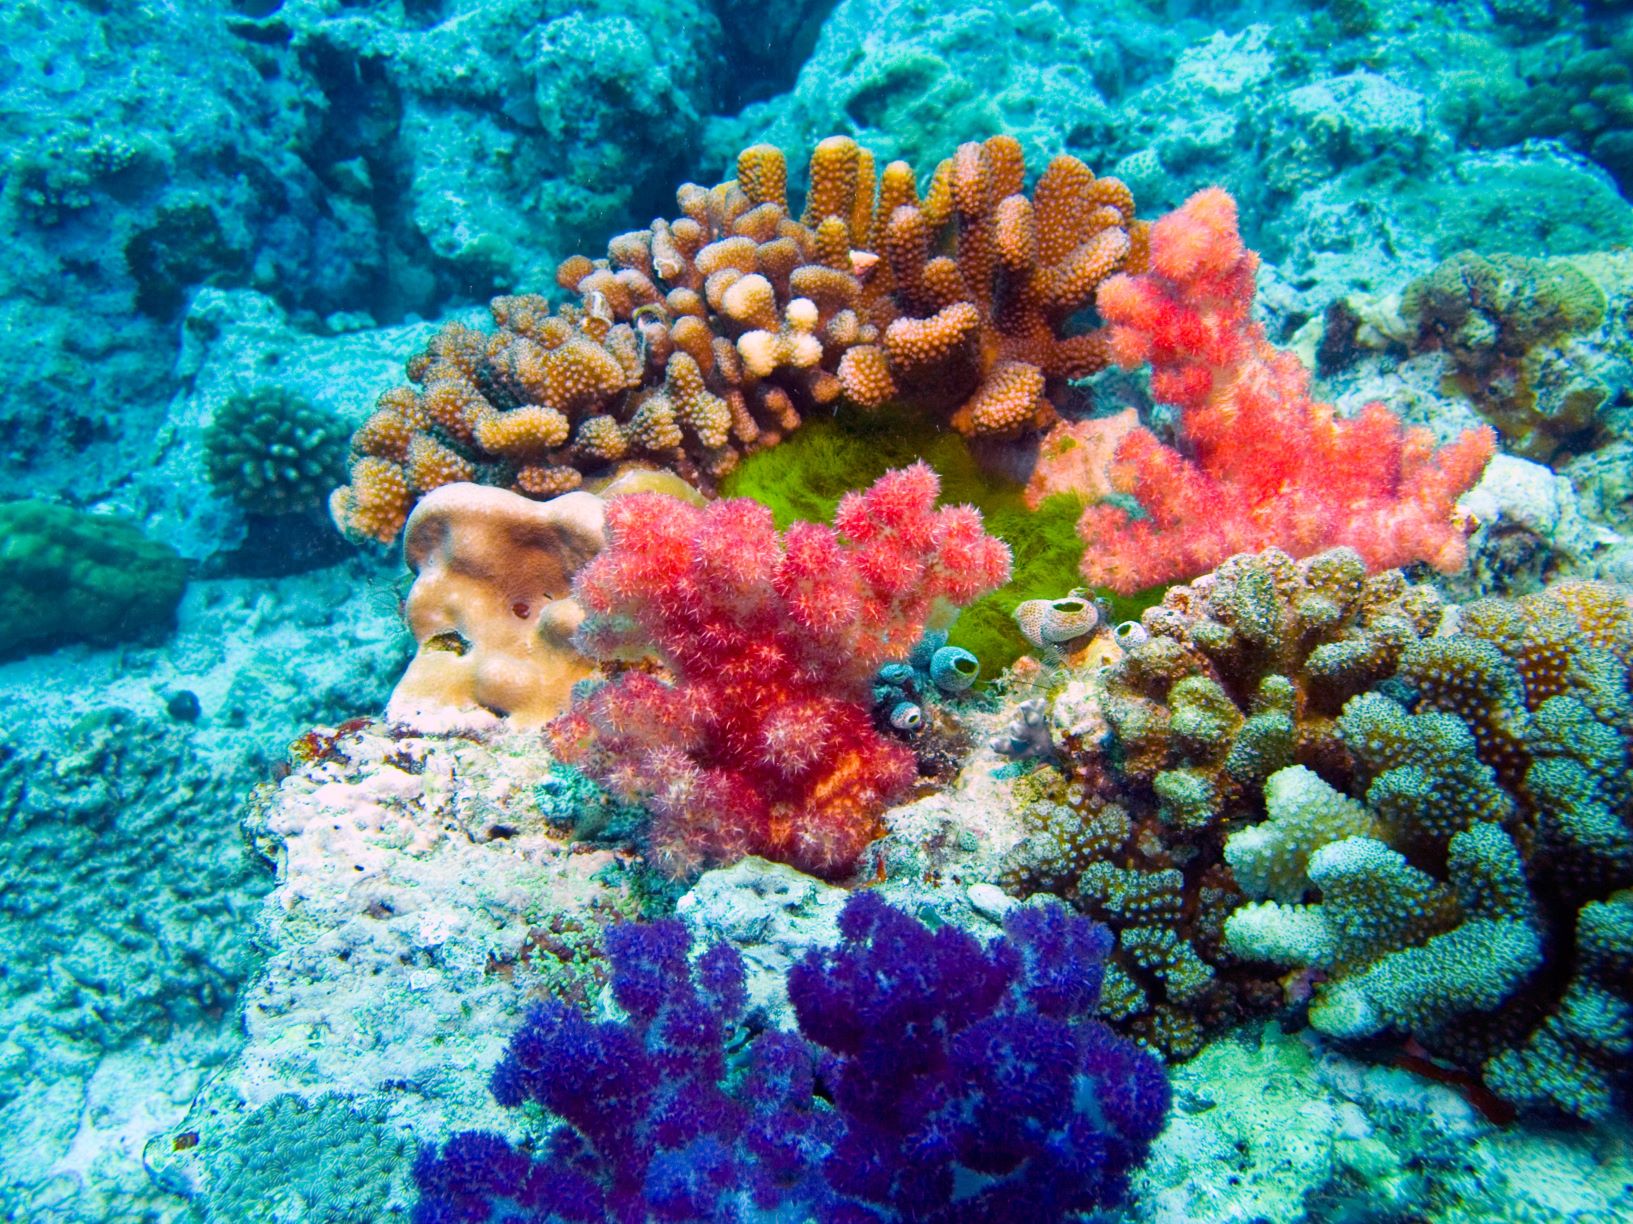 ハワイの海とサンゴの関係 Malama Hawaii マラマハワイ ハワイ州レスポンシブルツーリズム情報サイト